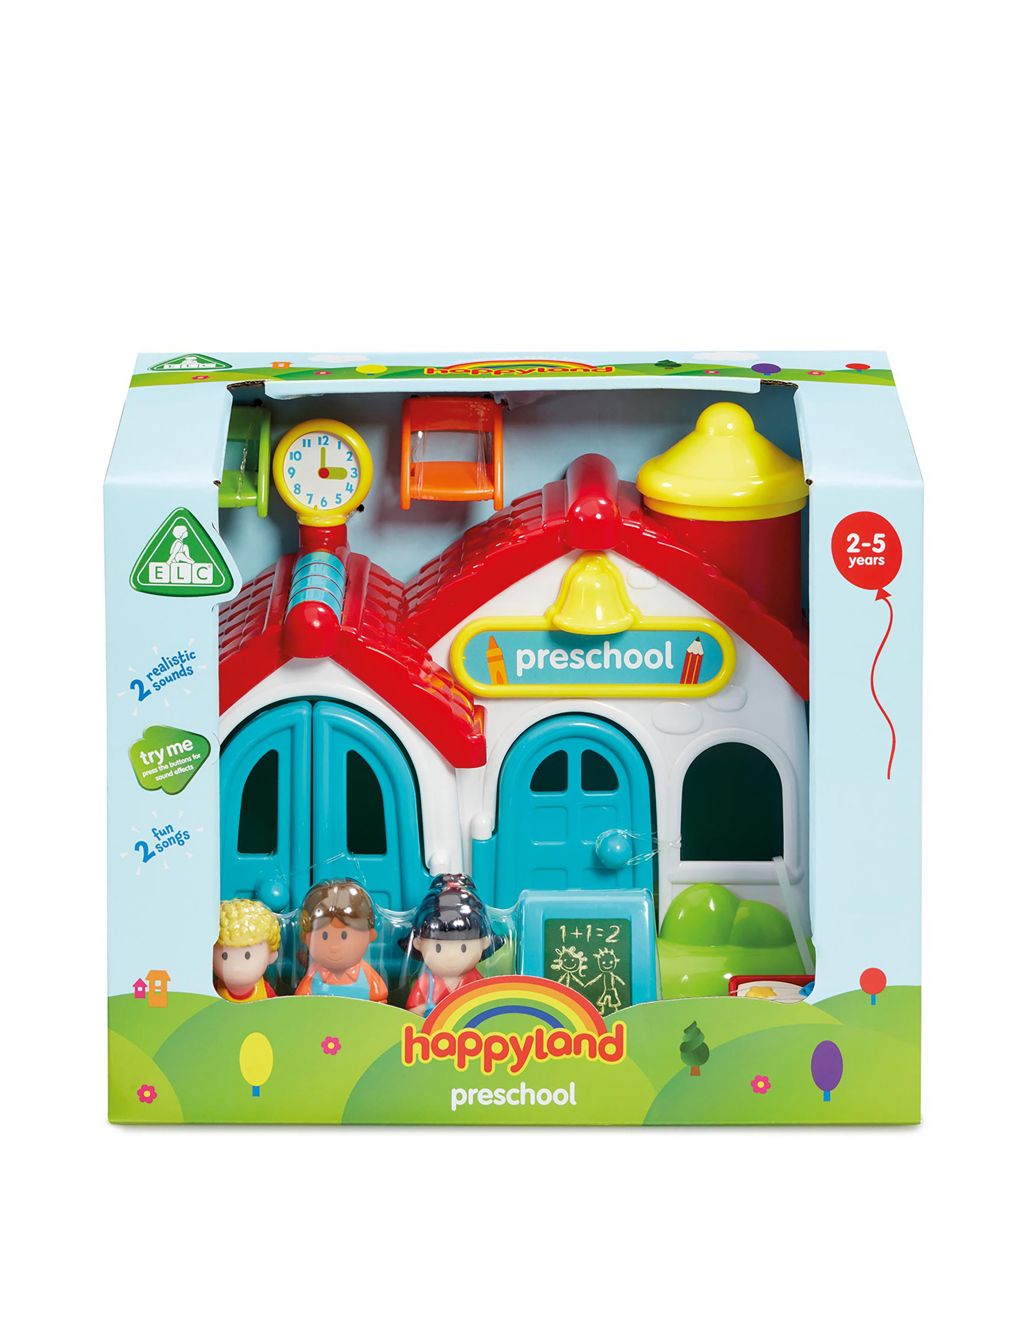 Happyland Preschool Playset (2-5 Yrs) 1 of 2